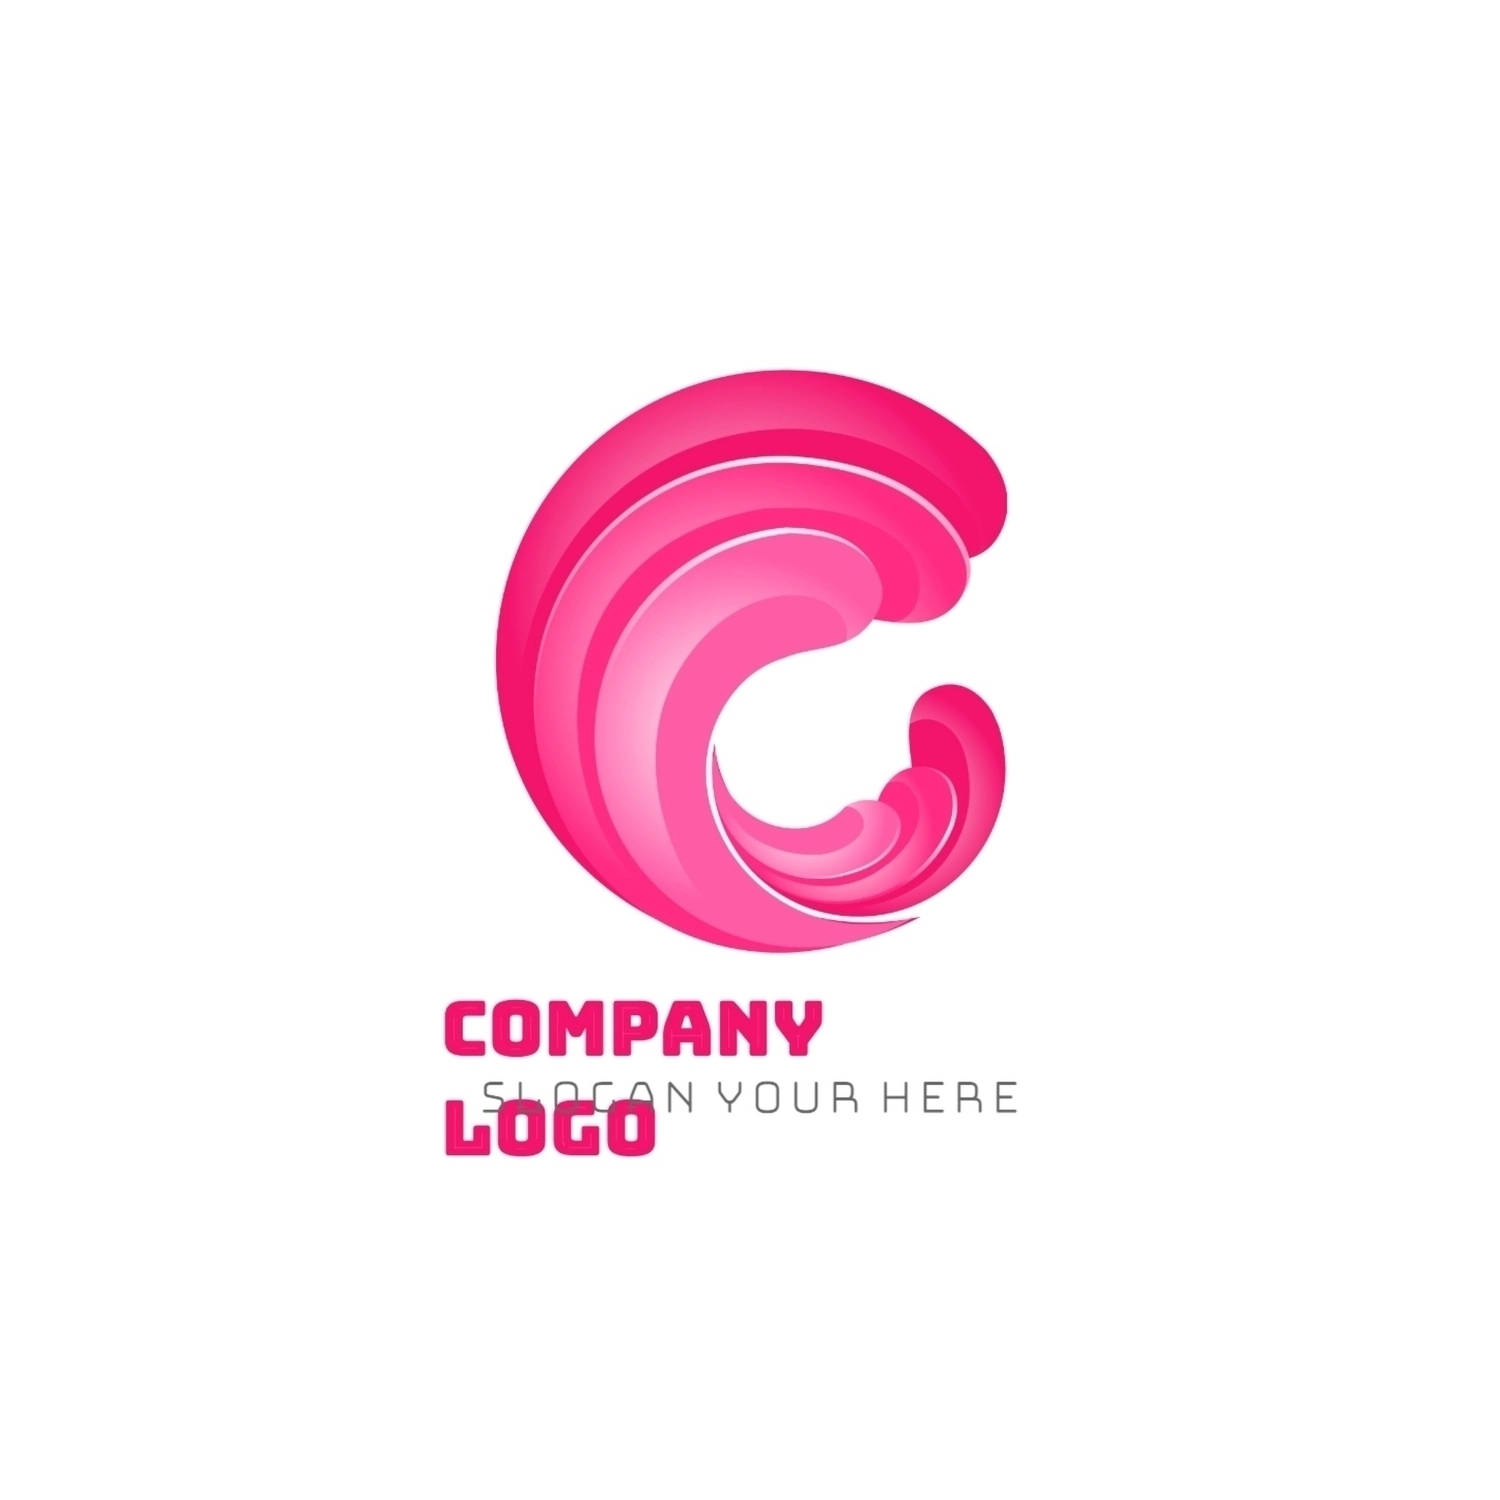 Cの形のロゴ, 白色の背景, 白地, ロゴマーク, ロゴテンプレート